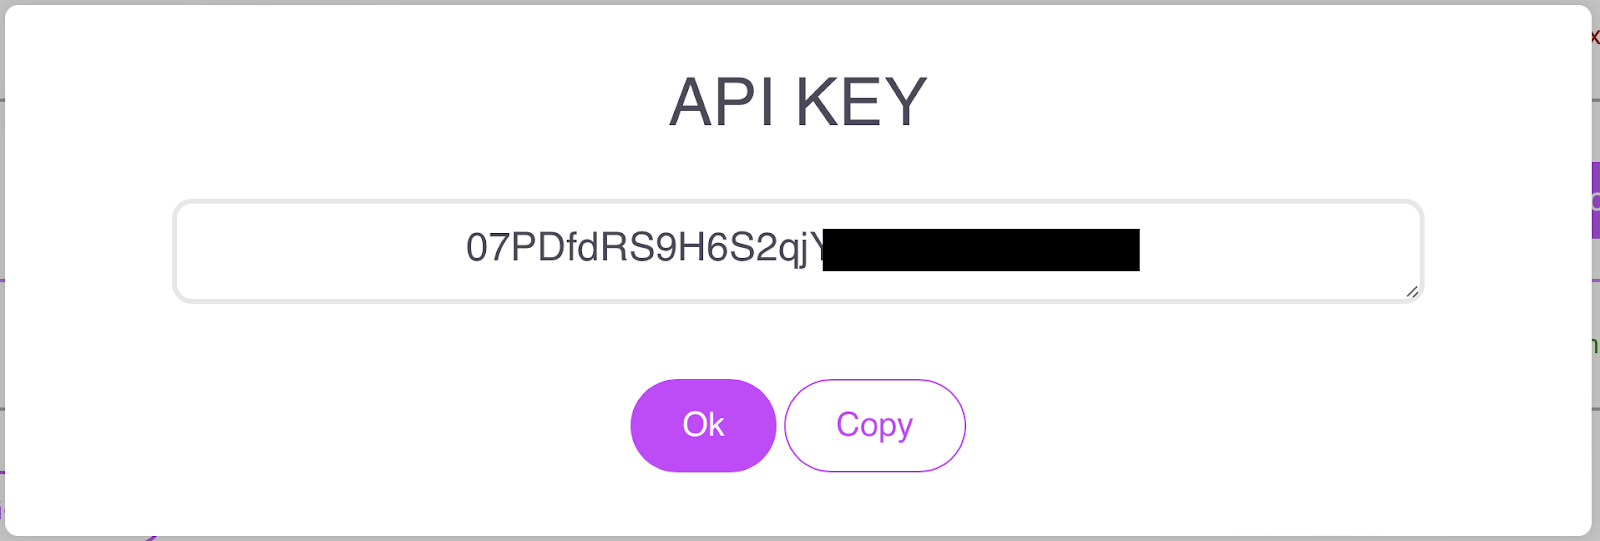 Click the “Get API key” button.